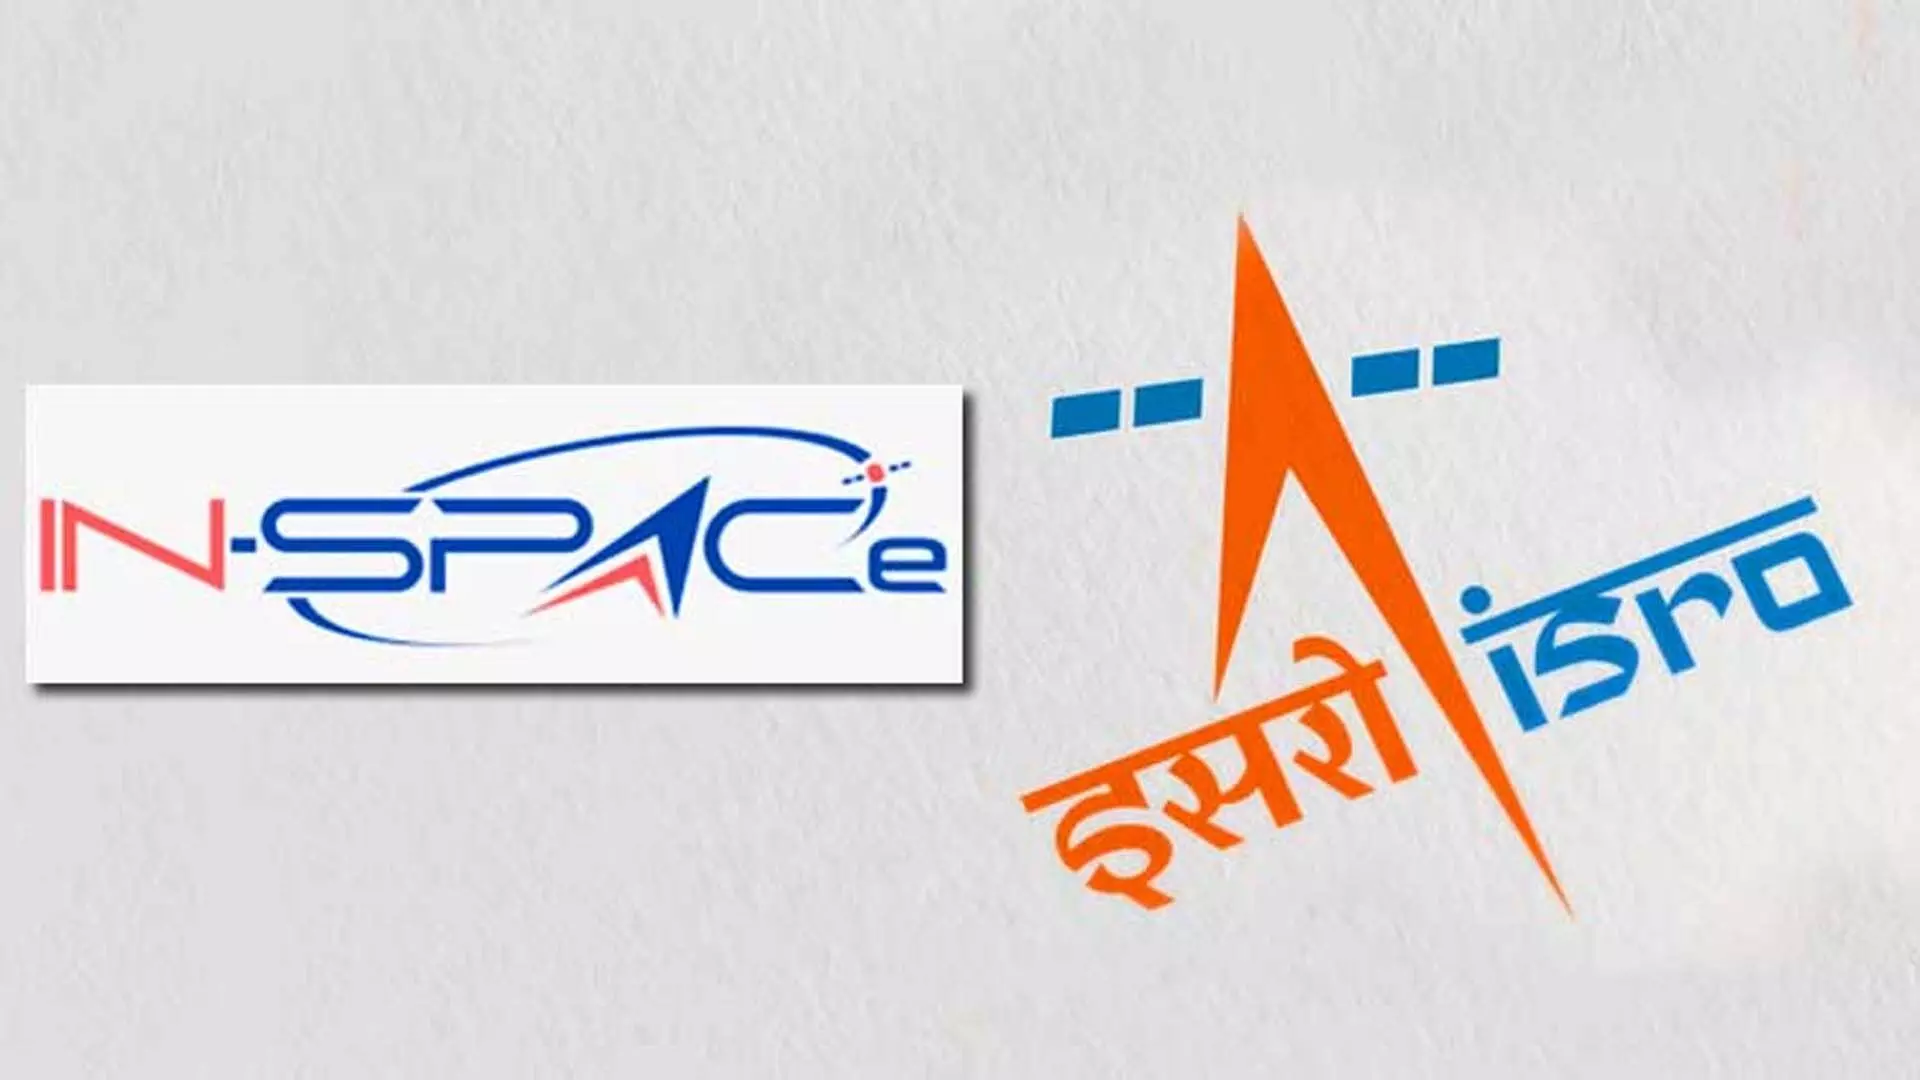 IN-SPACe छह इसरो प्रौद्योगिकी कंपनियों के हस्तांतरण की सुविधा  करता है प्रदान